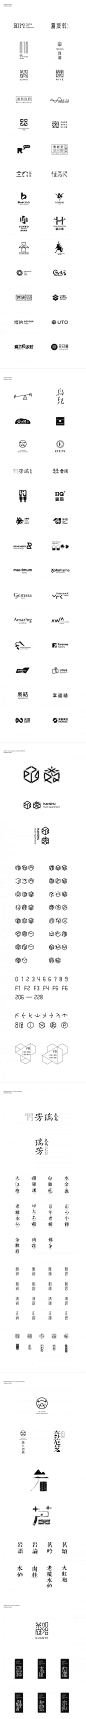 之间设计LOGO&字体设计小集 设计圈 展示 设计时代网-Powered by thinkdo3